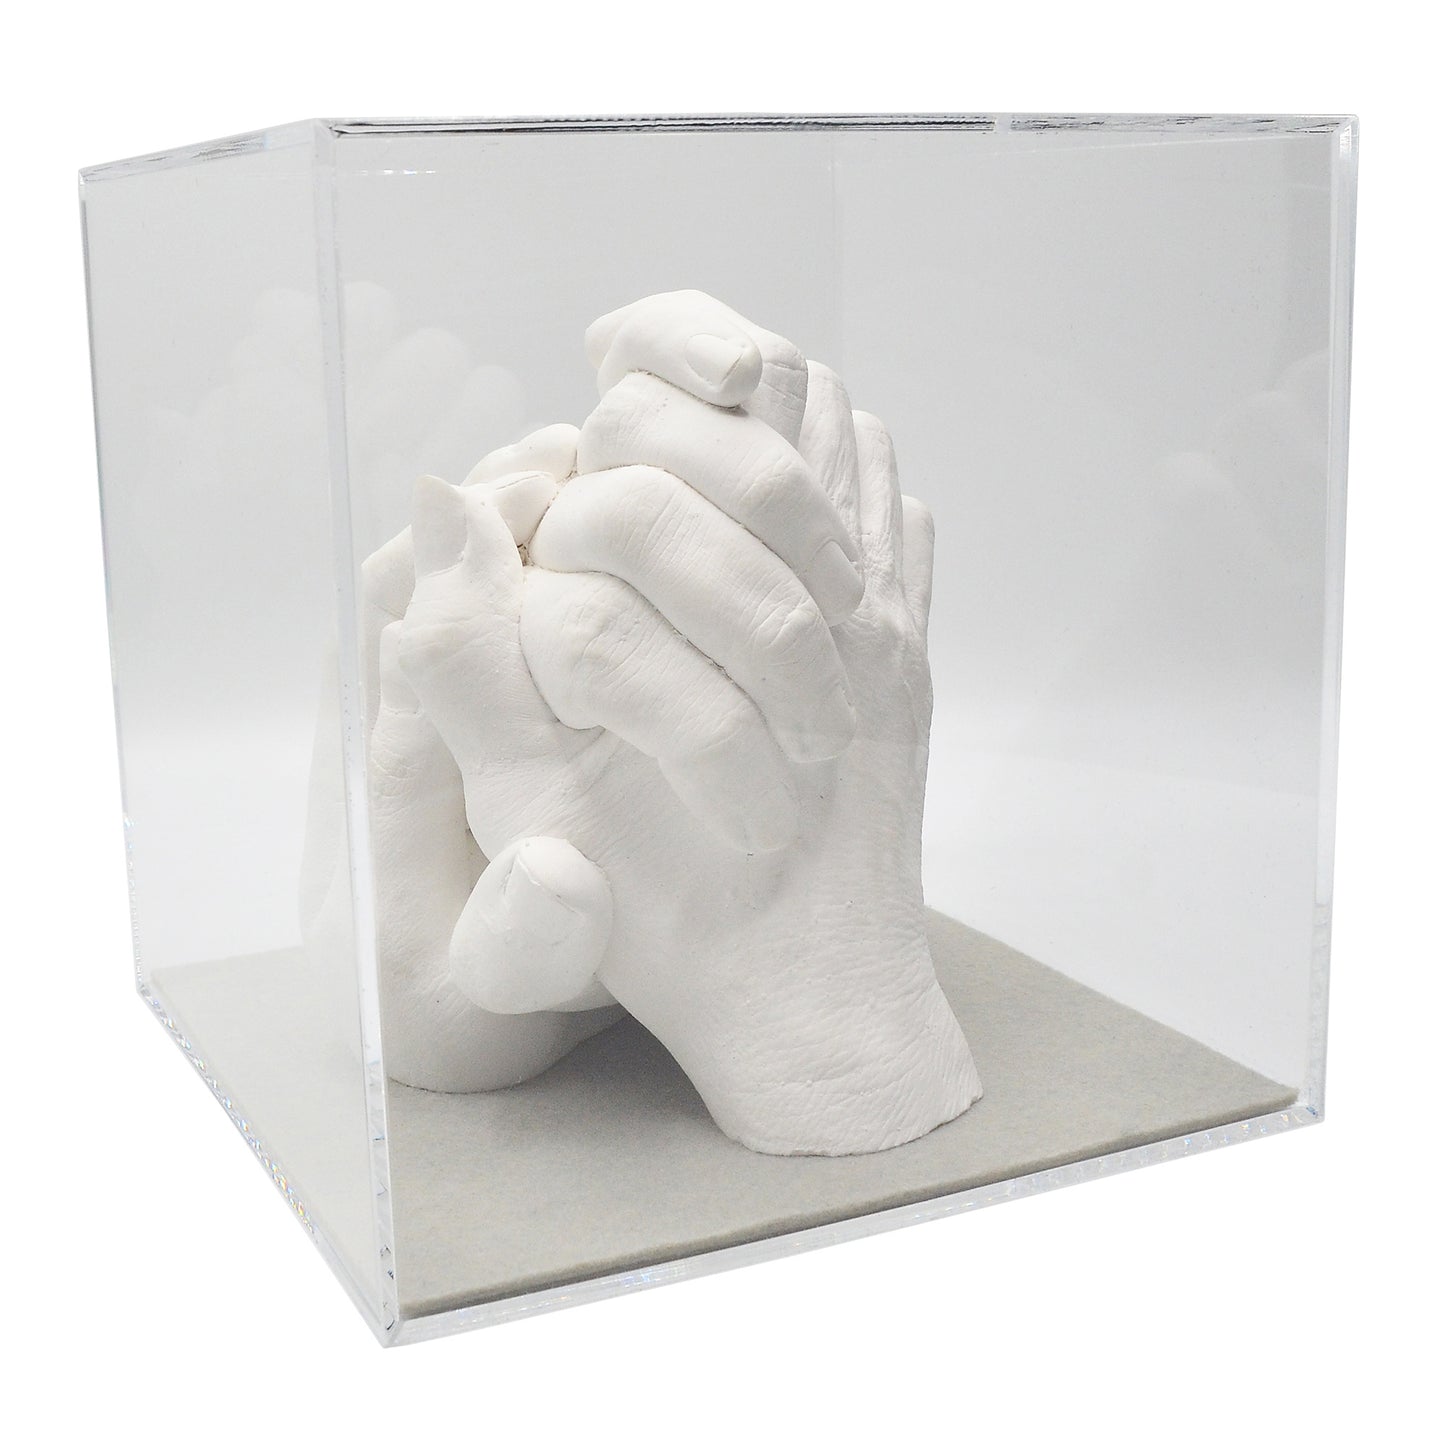 Abformsets "Family Hands" TRIO mit Acrylglaswürfel (20 x 20 x 20 cm)